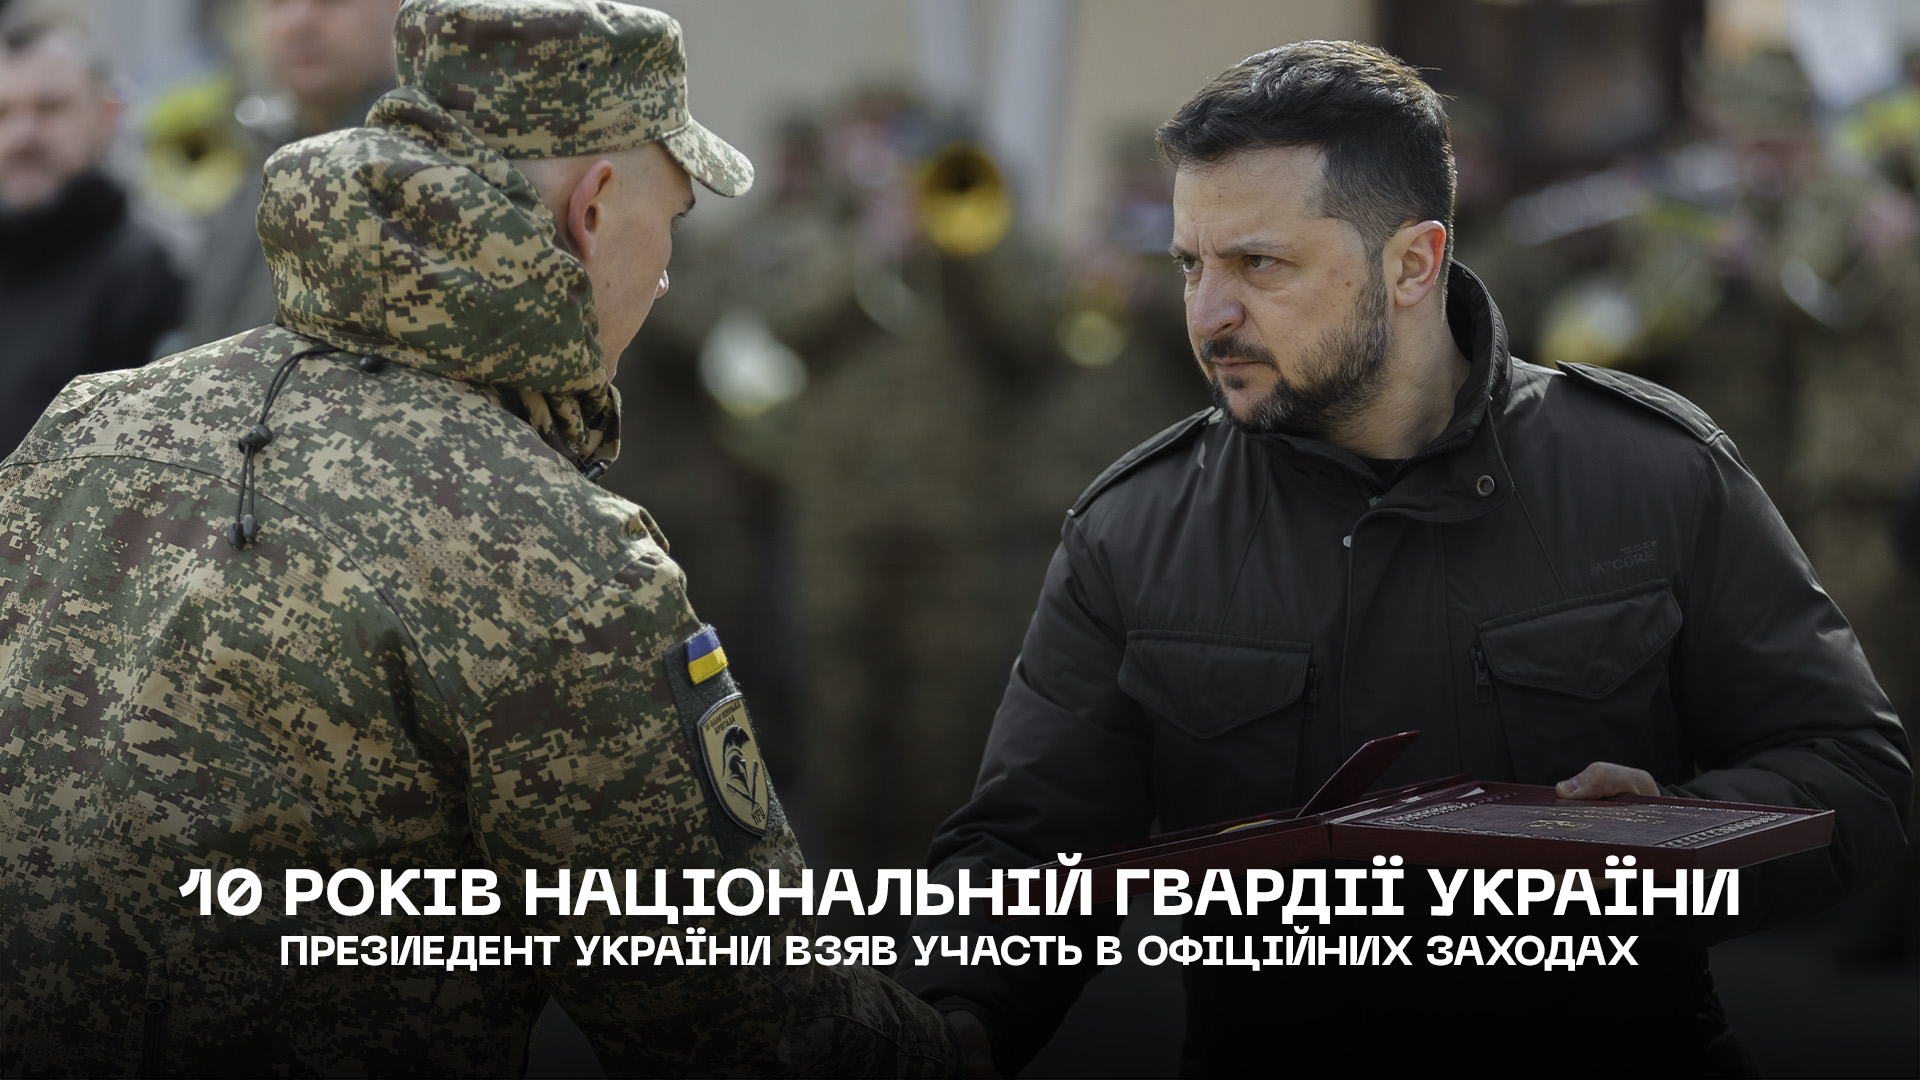 Президент України взяв участь в офіційних заходах, присвячених 10 річниці створення Національної гвардії України